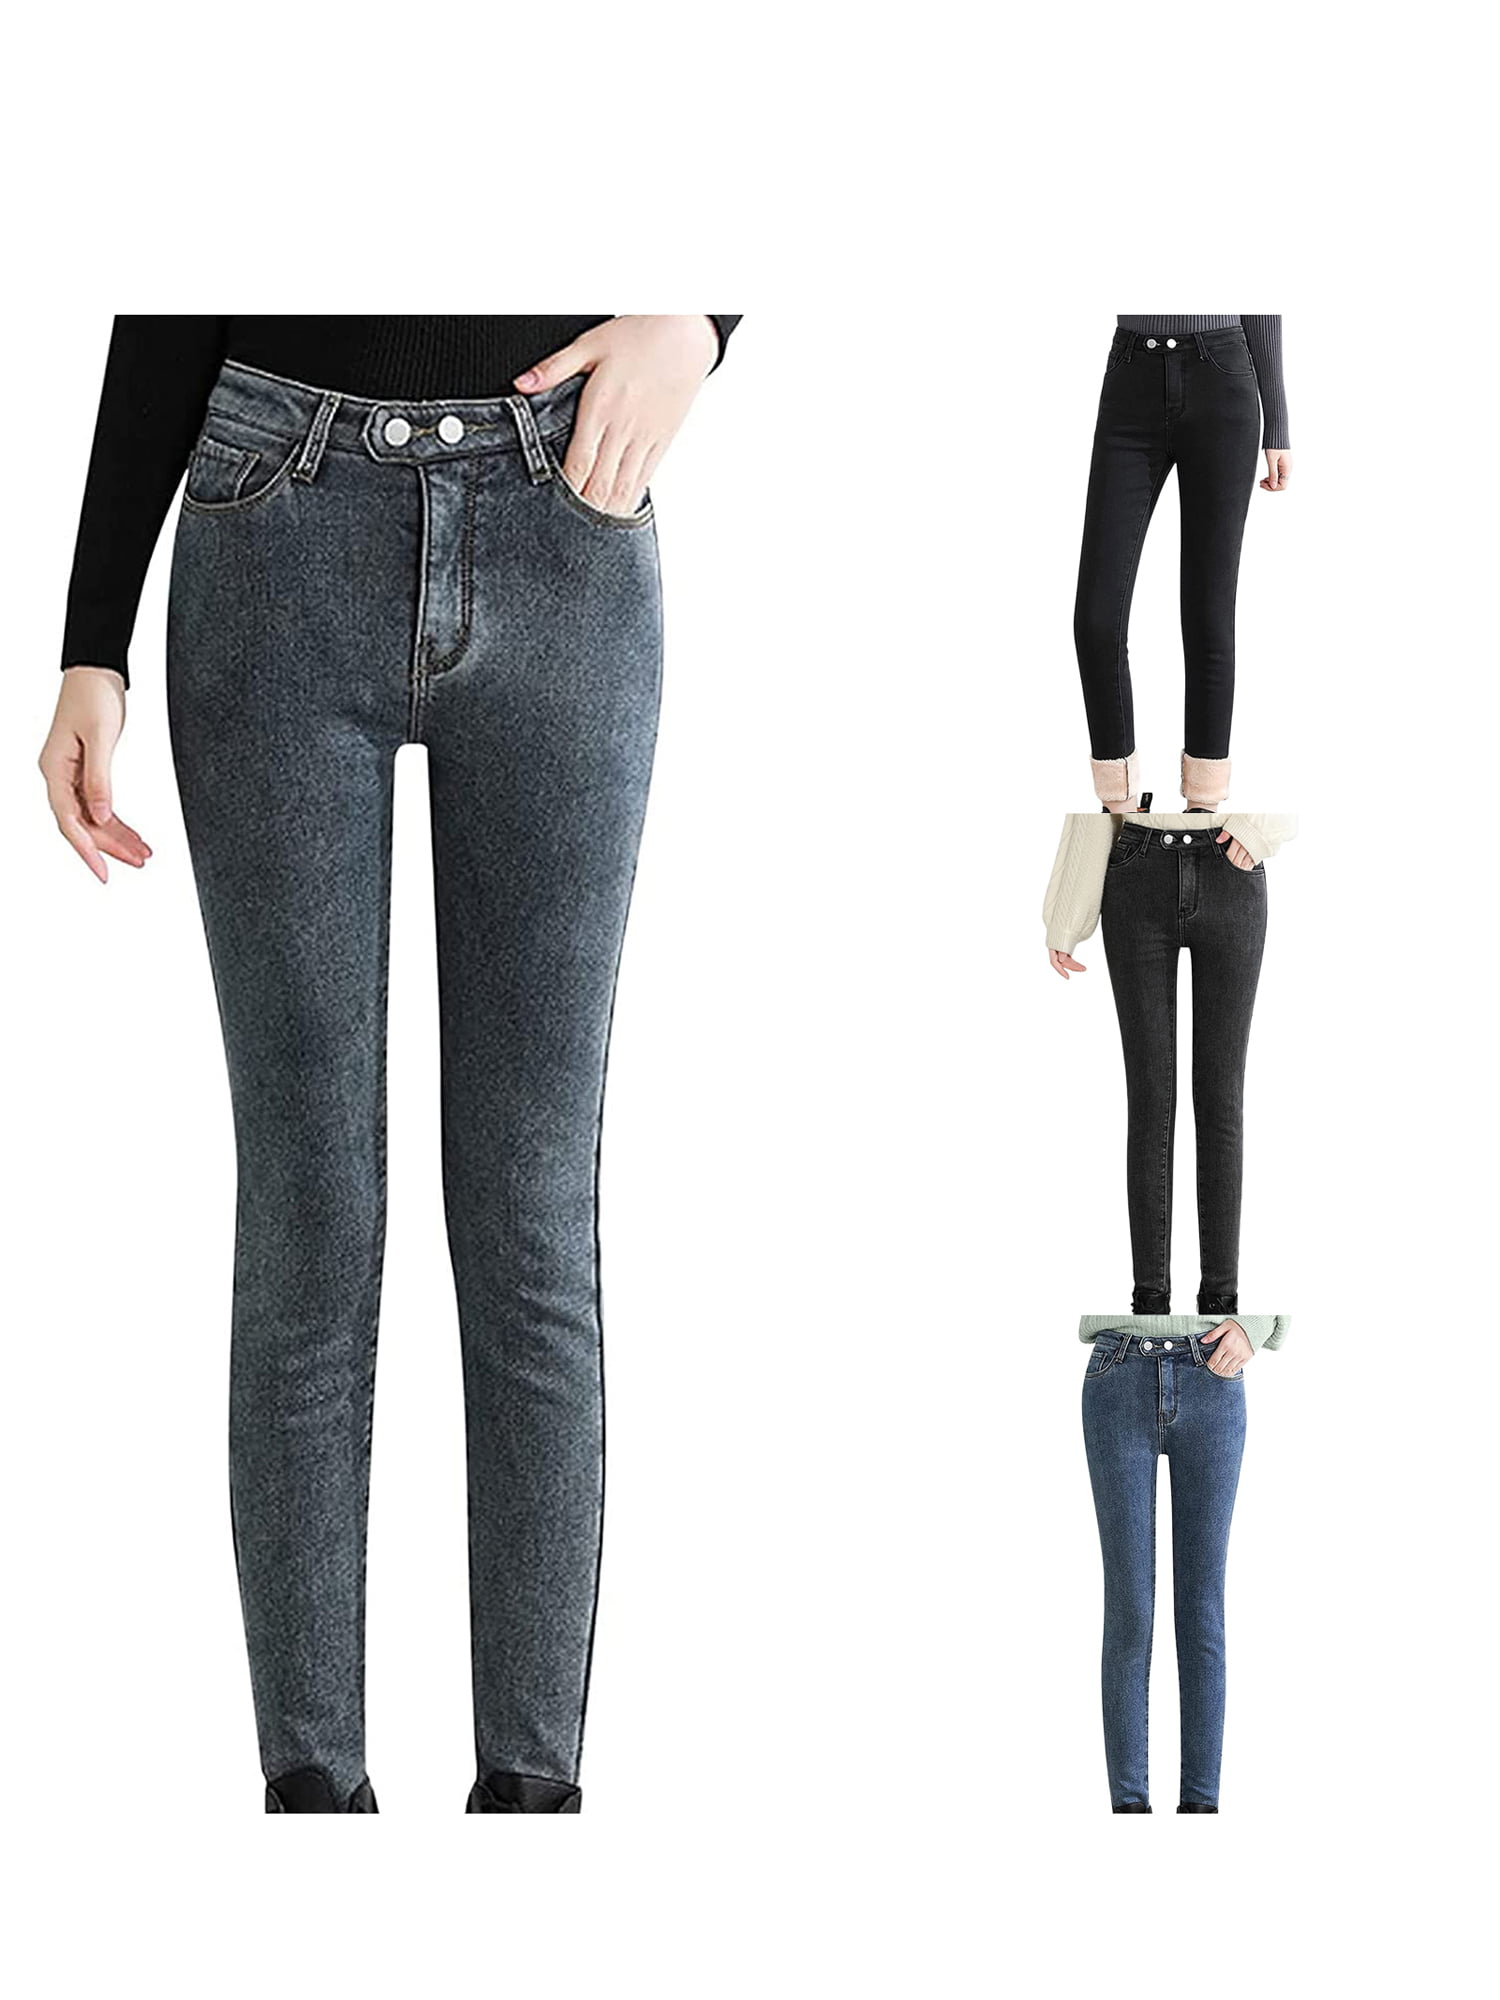 Women Flannel Lined Jean Winter Warm Fleece Lining Jeans, 49% OFF